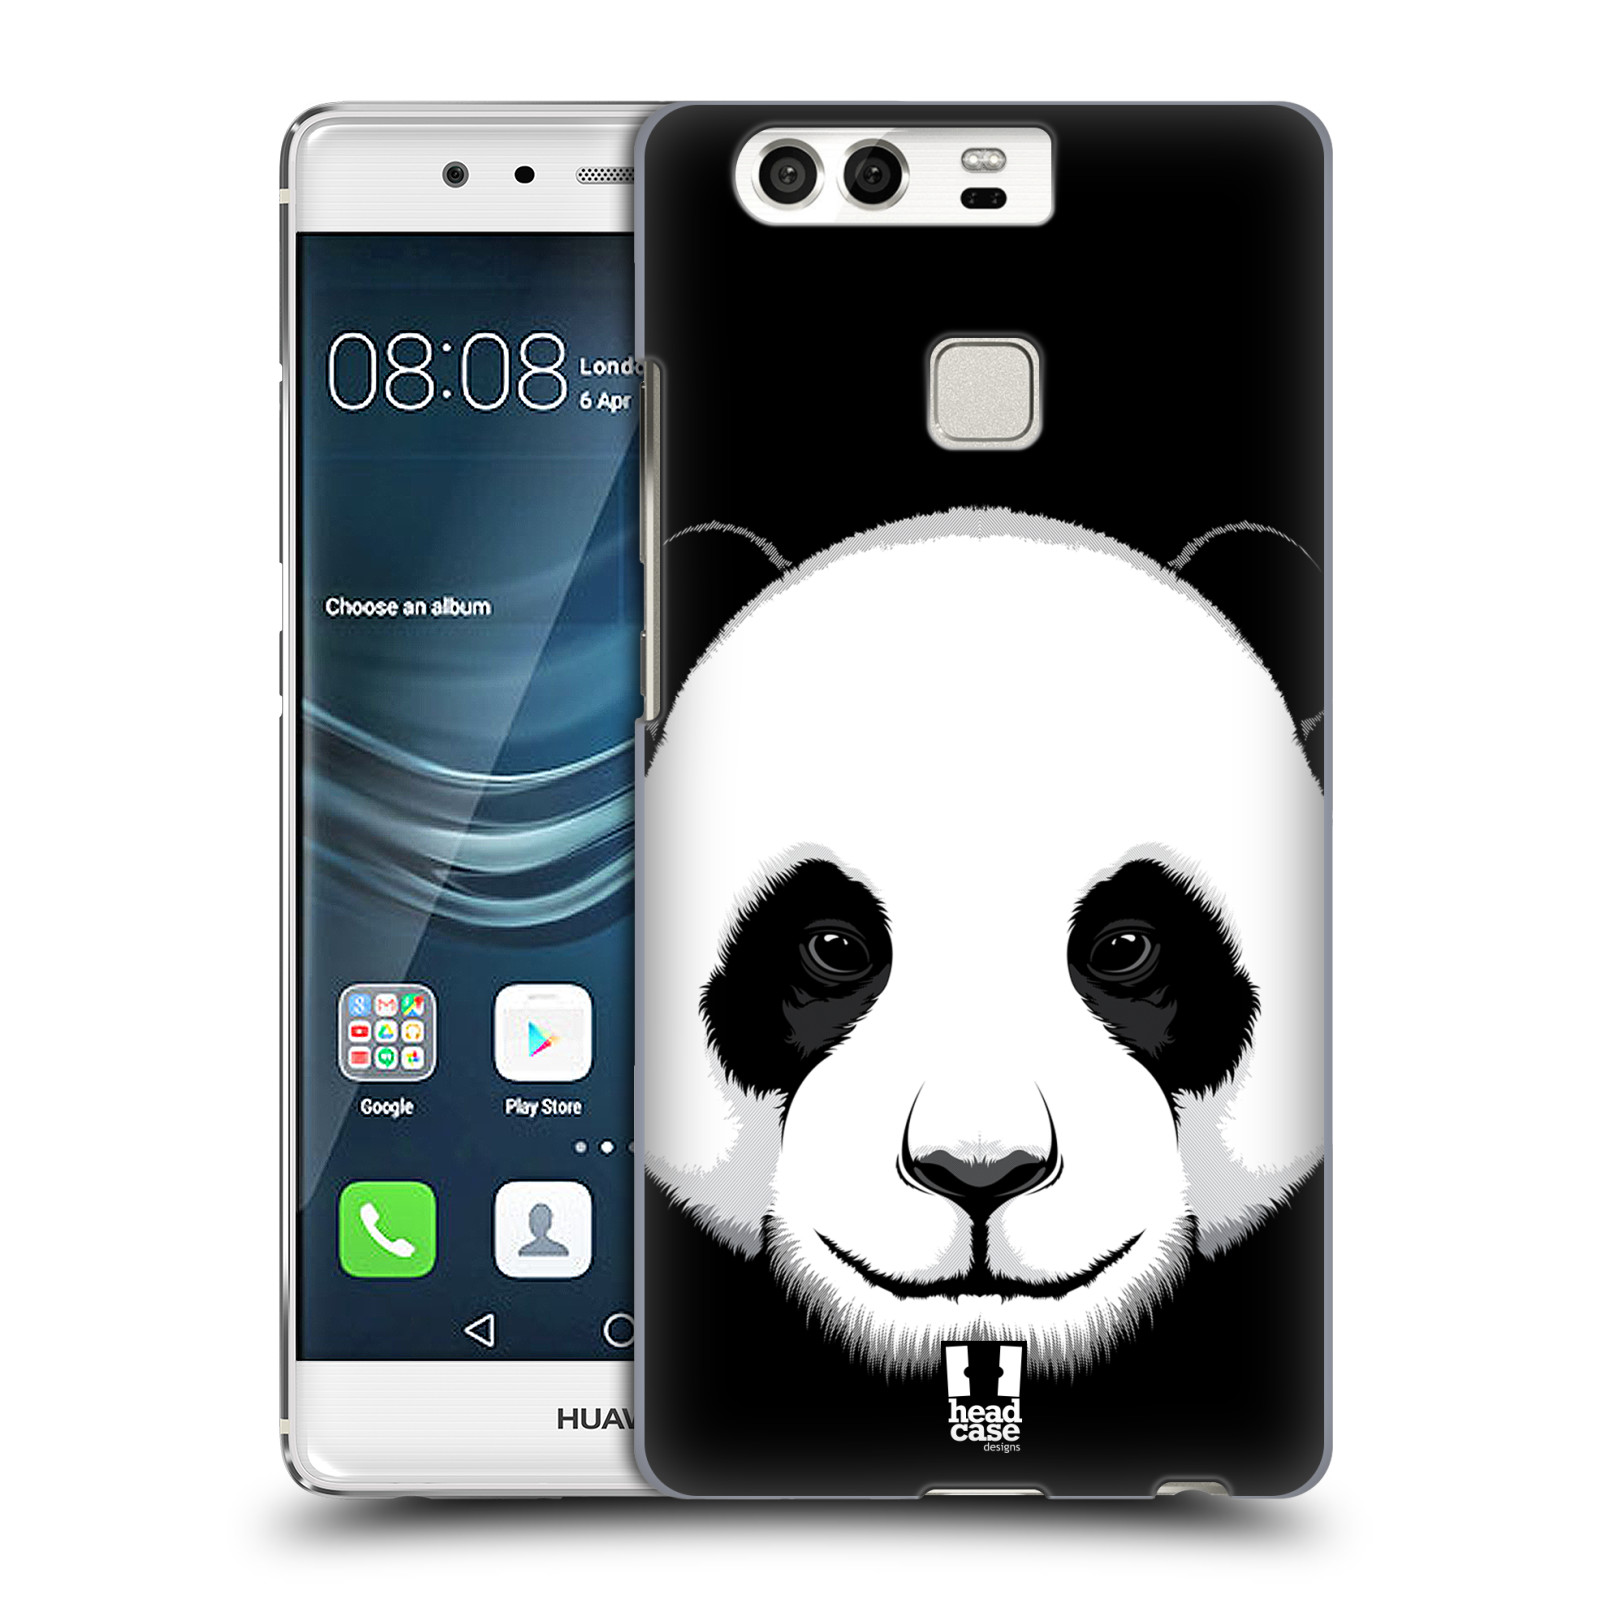 HEAD CASE plastový obal na mobil Huawei P9 / P9 DUAL SIM vzor Zvíře kreslená tvář panda